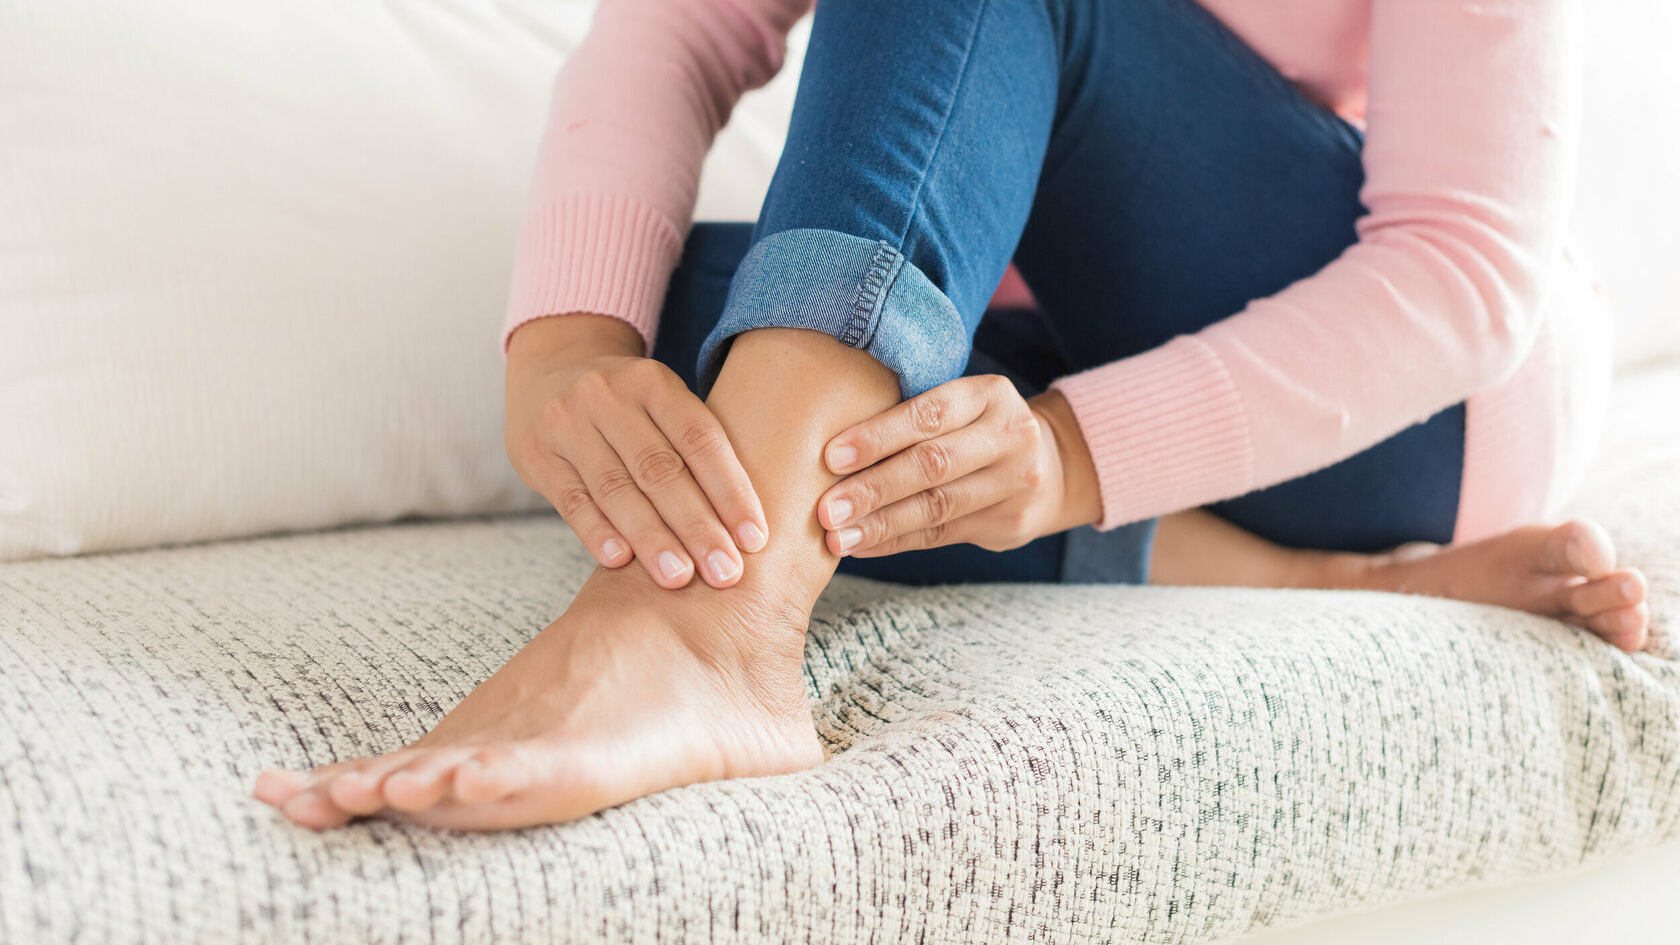 Немеют пальцы на ногах: причины, лечение и профилактика